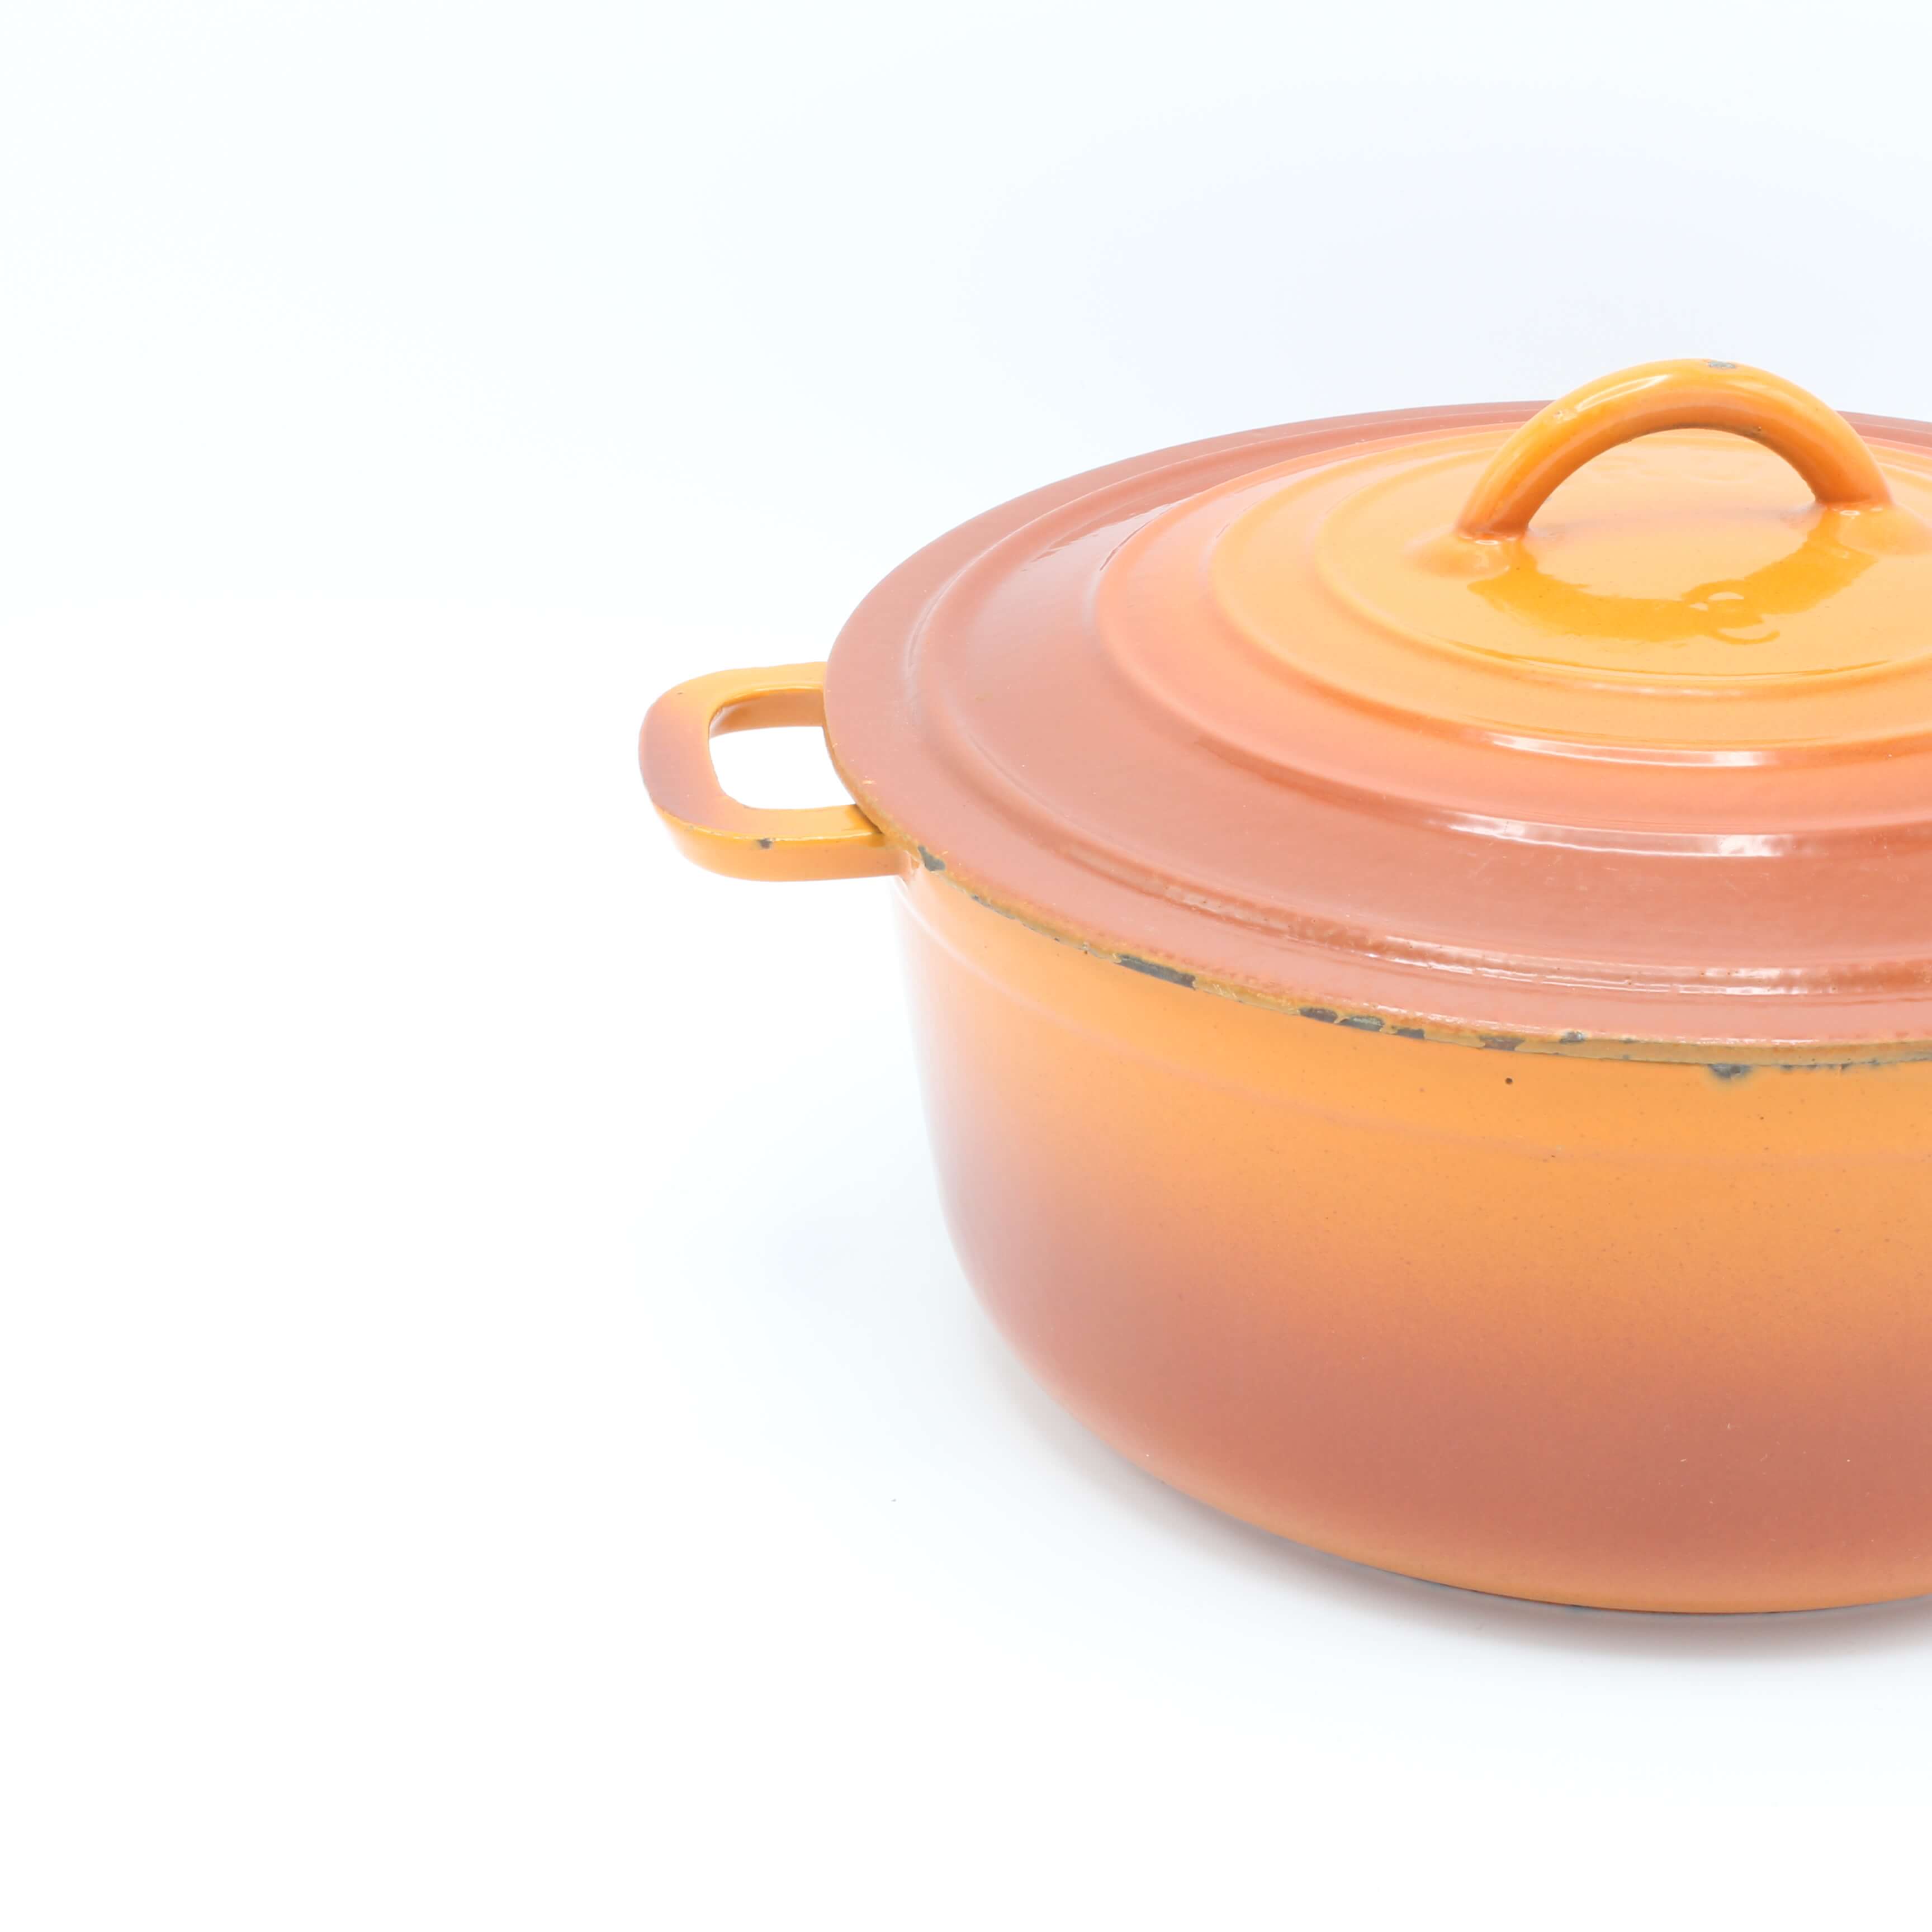 Voor u emotioneel nietig DRU gietijzeren braadpan, No.8 oranjerood 22 cm • Gaer Cookware